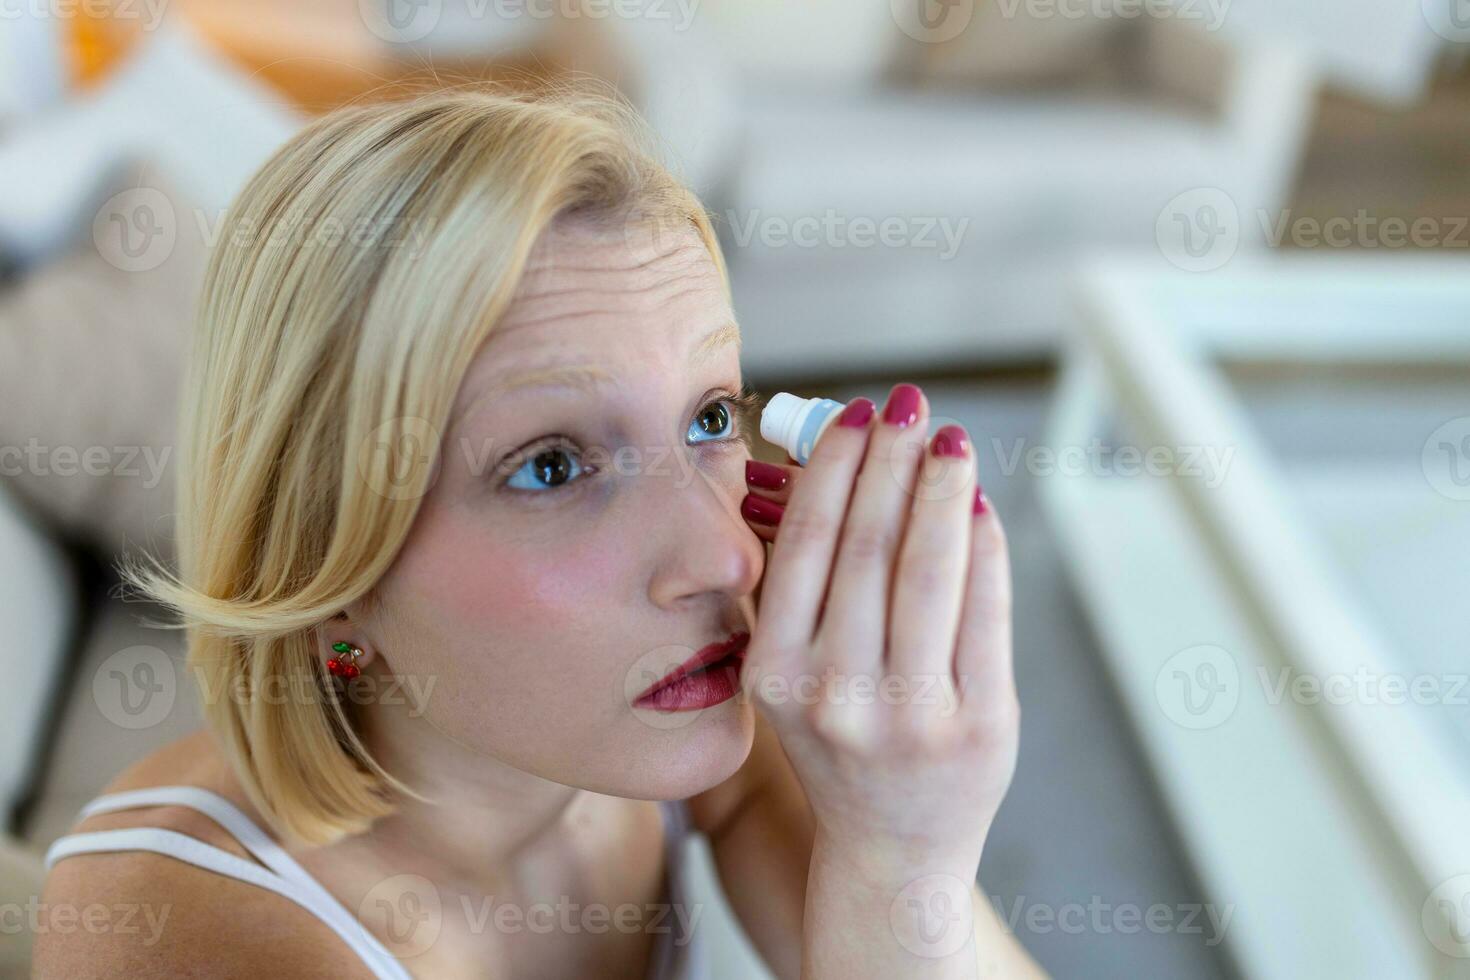 kvinna använder sig av öga släppa, kvinna dropp öga smörjmedel till behandla torr öga eller allergi sjuk flicka behandla eyeball irritation eller inflammation sjuk kvinna lidande från irriterad öga, optisk symptom foto